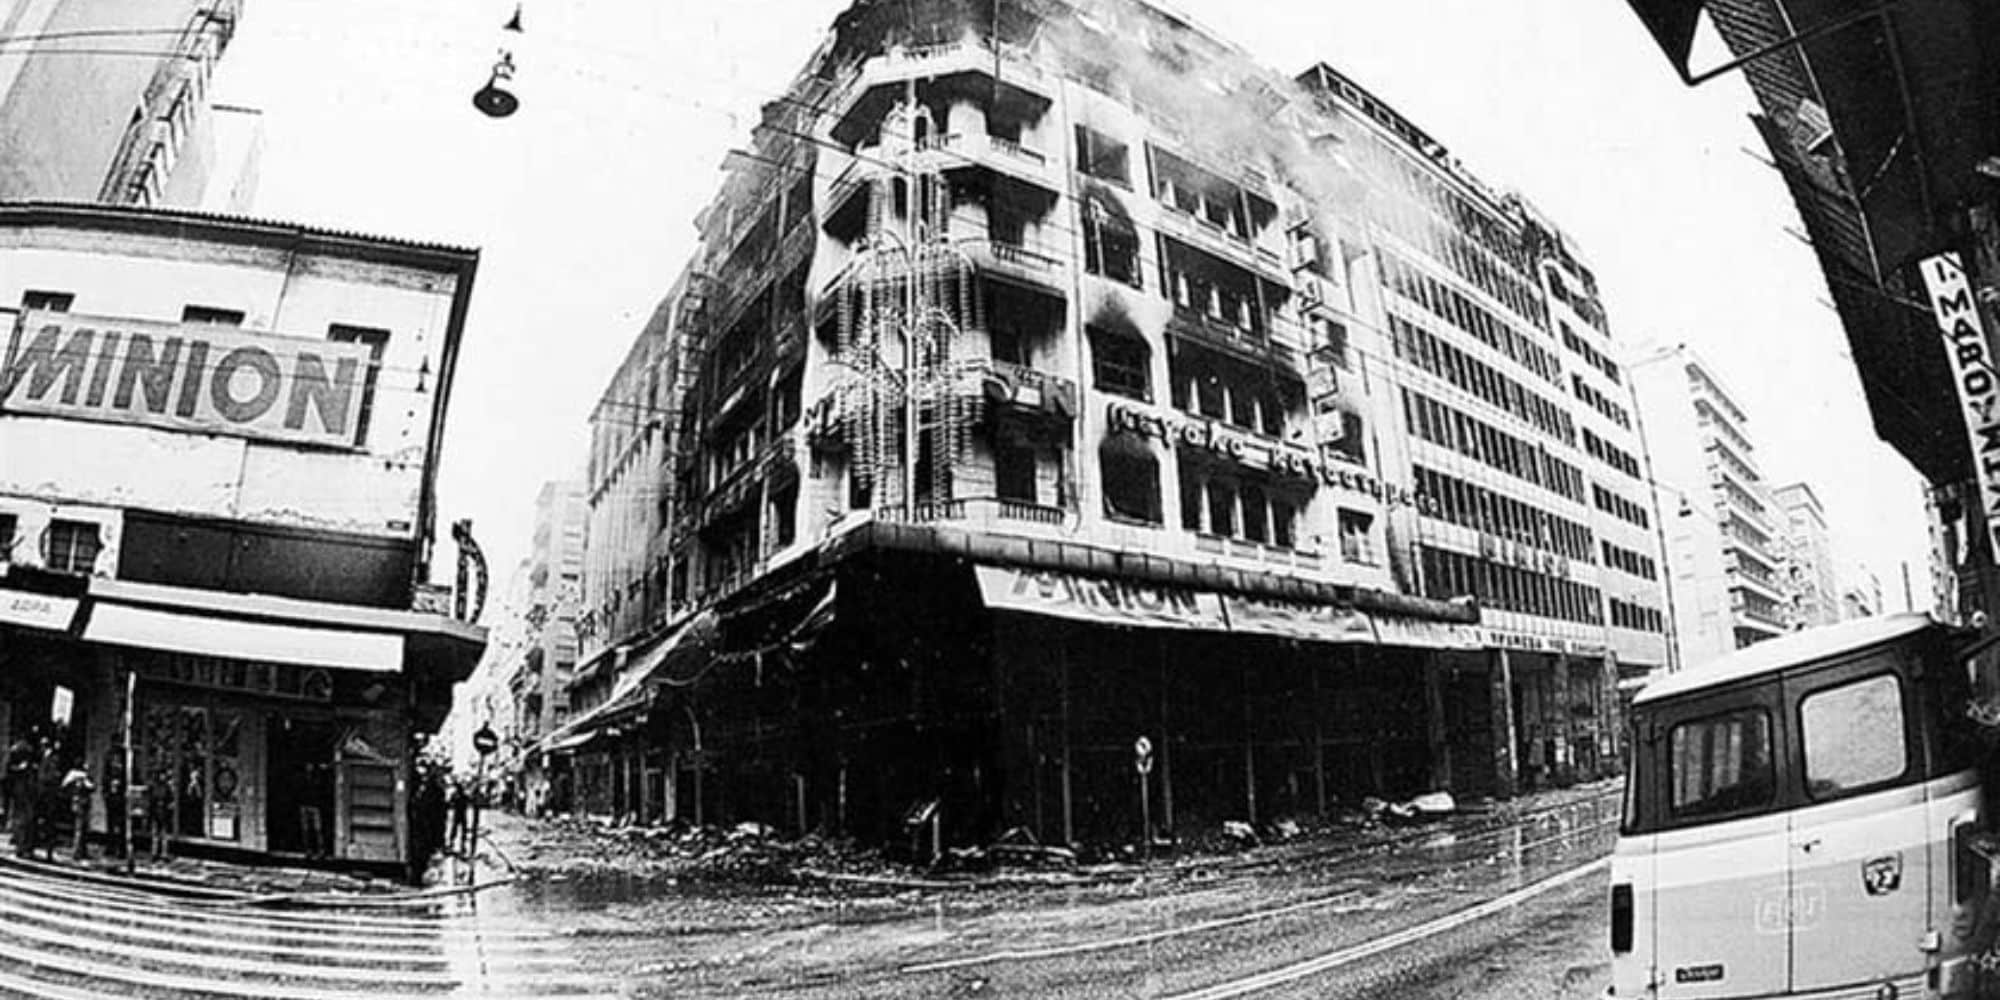 Σαν σήμερα: 42 χρόνια από τη νύχτα που κάηκαν «Μινιόν» και «Κατράντζος» (εικόνες & βίντεο)